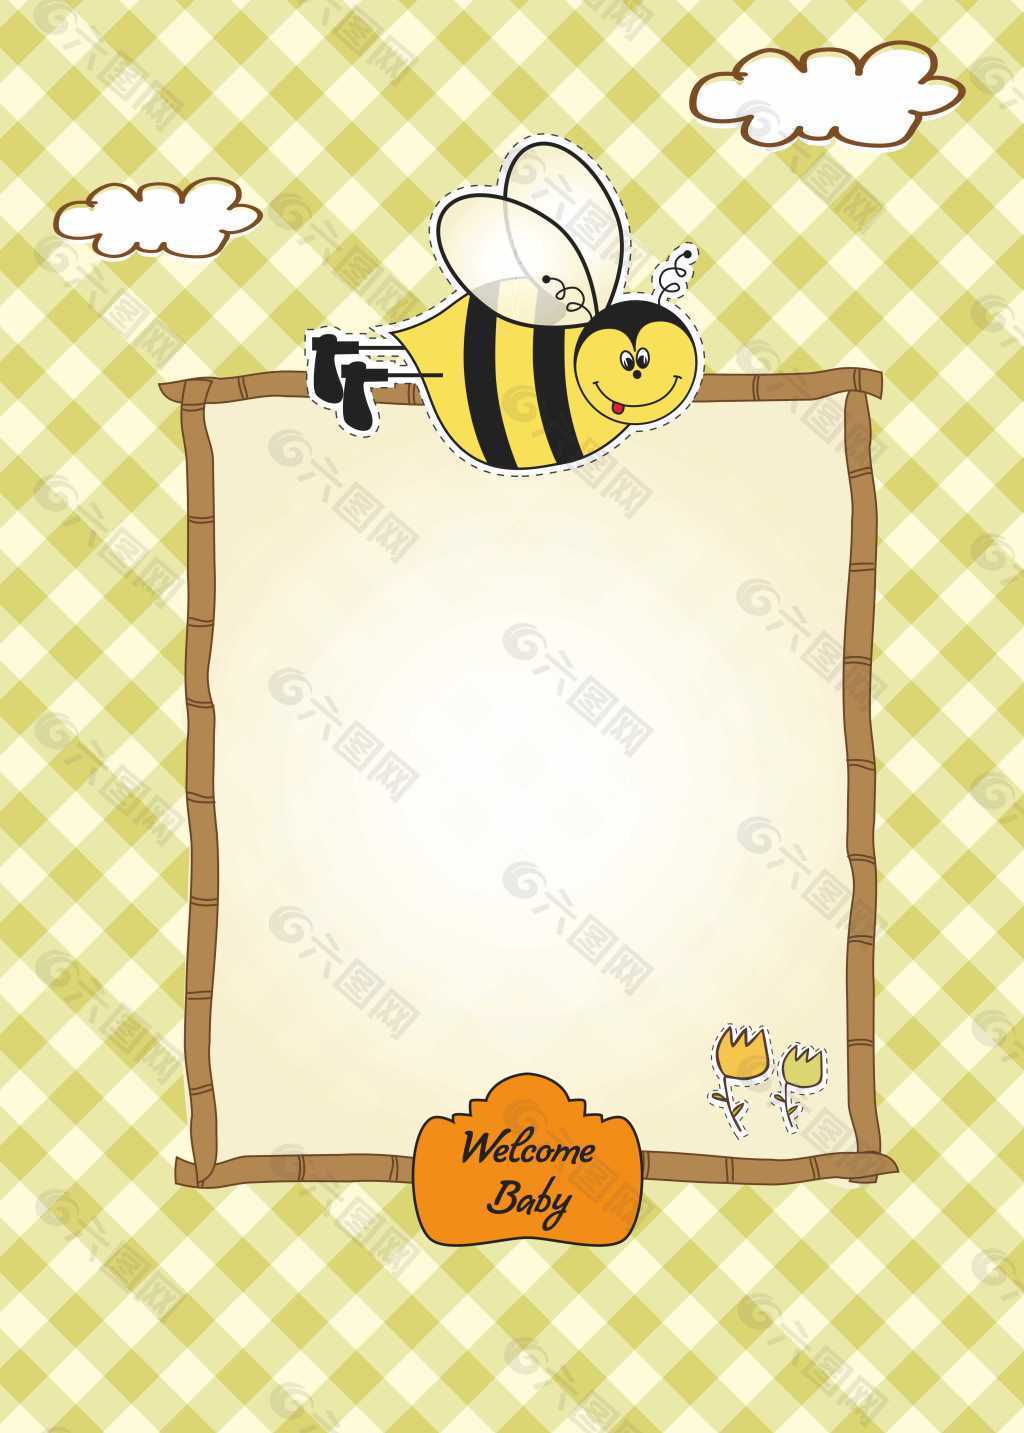 小蜜蜂相框